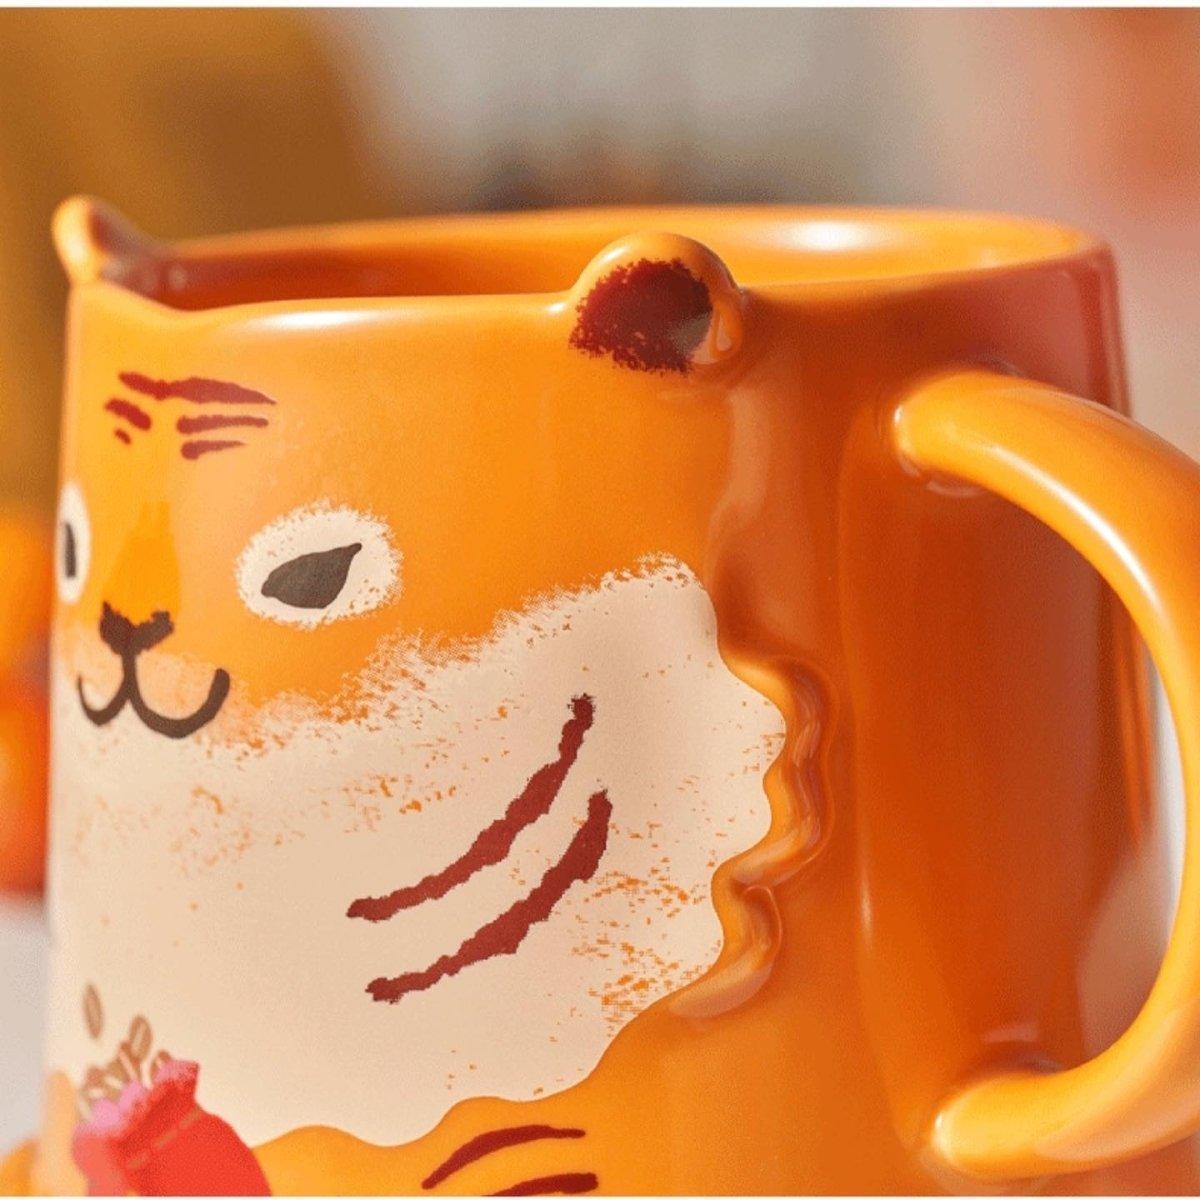 Tiger with Coffee Bean Pouch Ceramic Mug 414ml/14oz - Ann Ann Starbucks